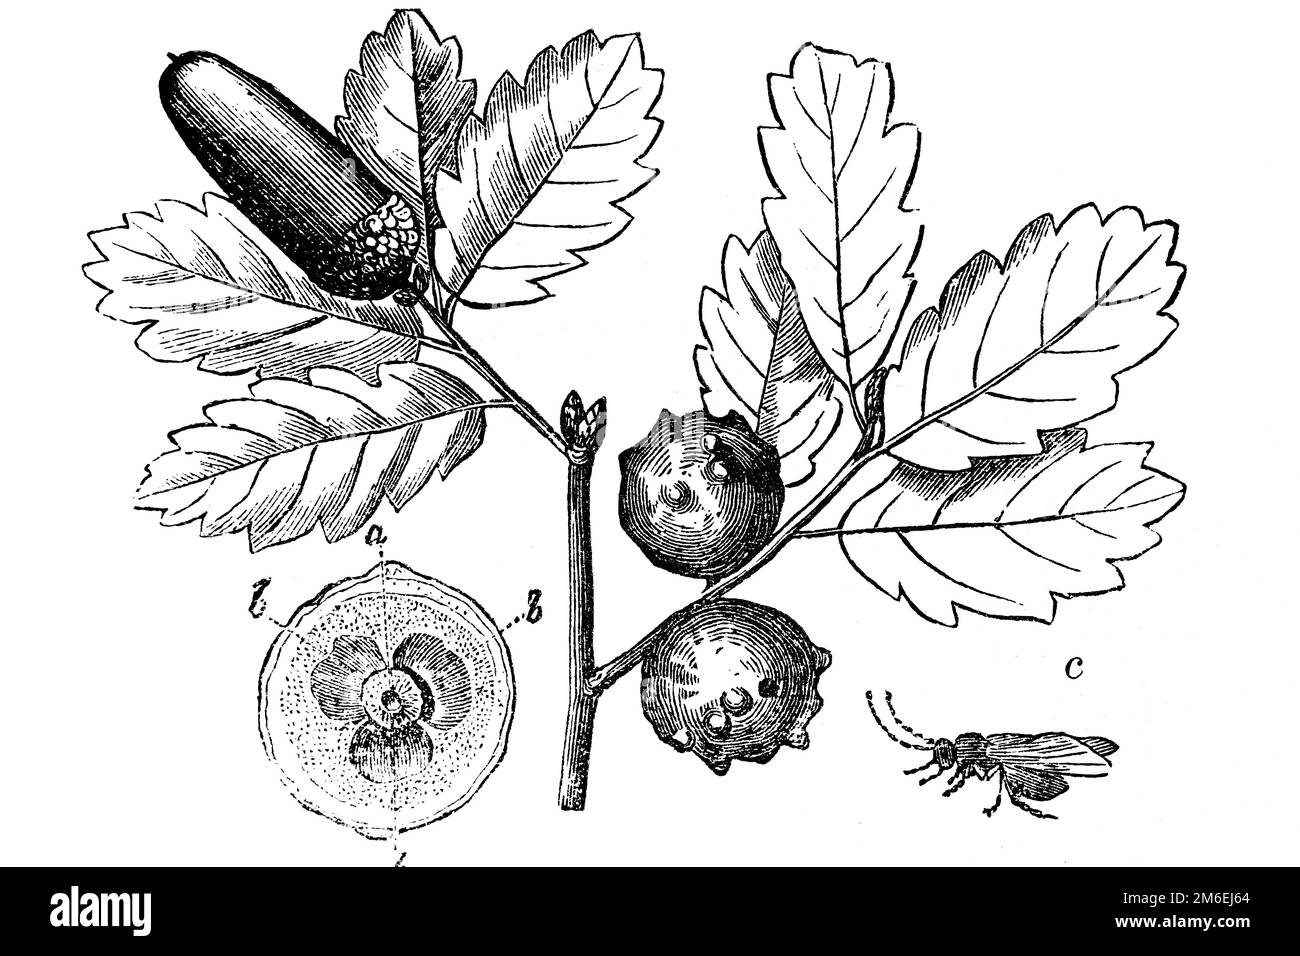 Noix de Galle, noix de chêne, guêpe de Galle de marbre (Andicus kollari) Quercus robur. L'excrescence est produite dans diverses parties des plantes, comme les boutons, les feuilles et les fru Banque D'Images